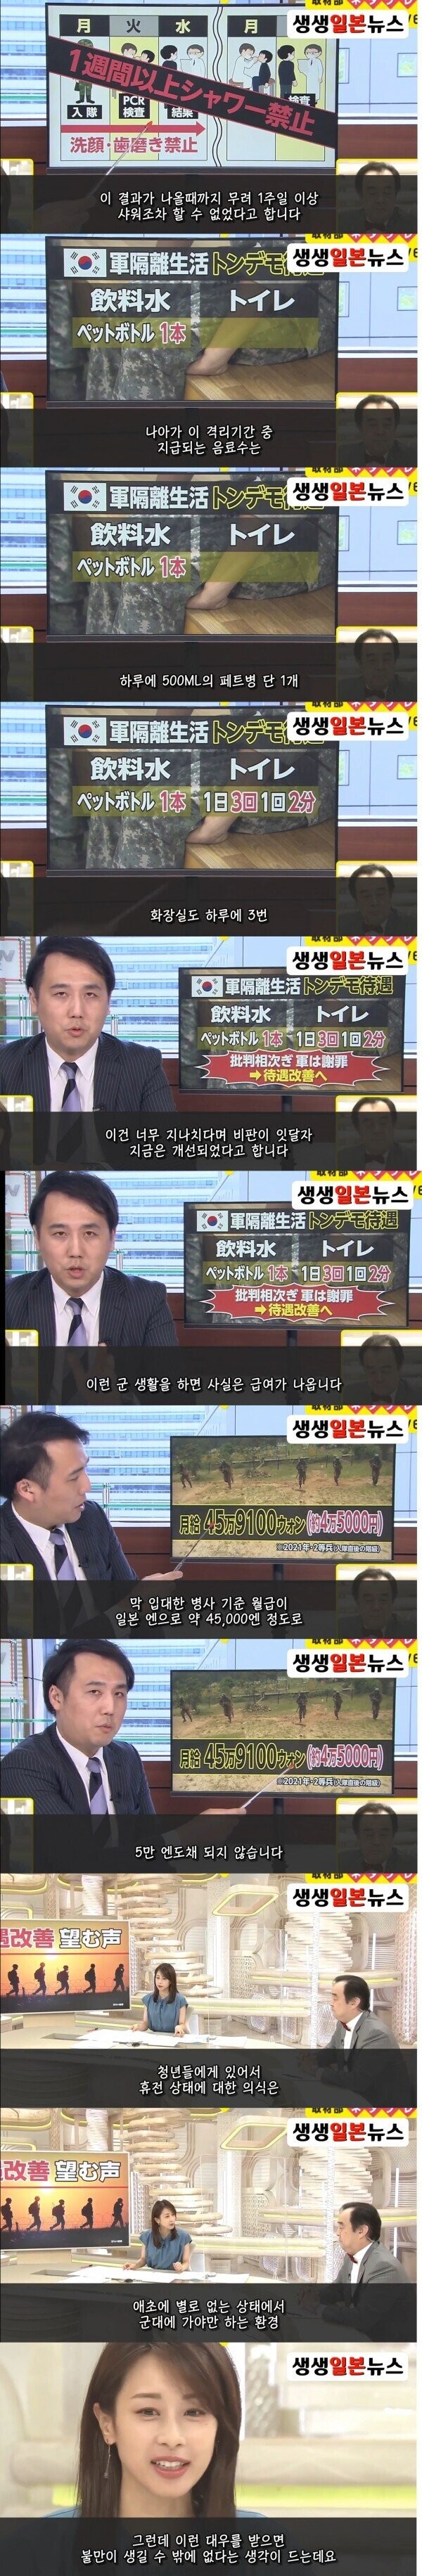 한국군의 단점을 지적하는 일본방송.jpg